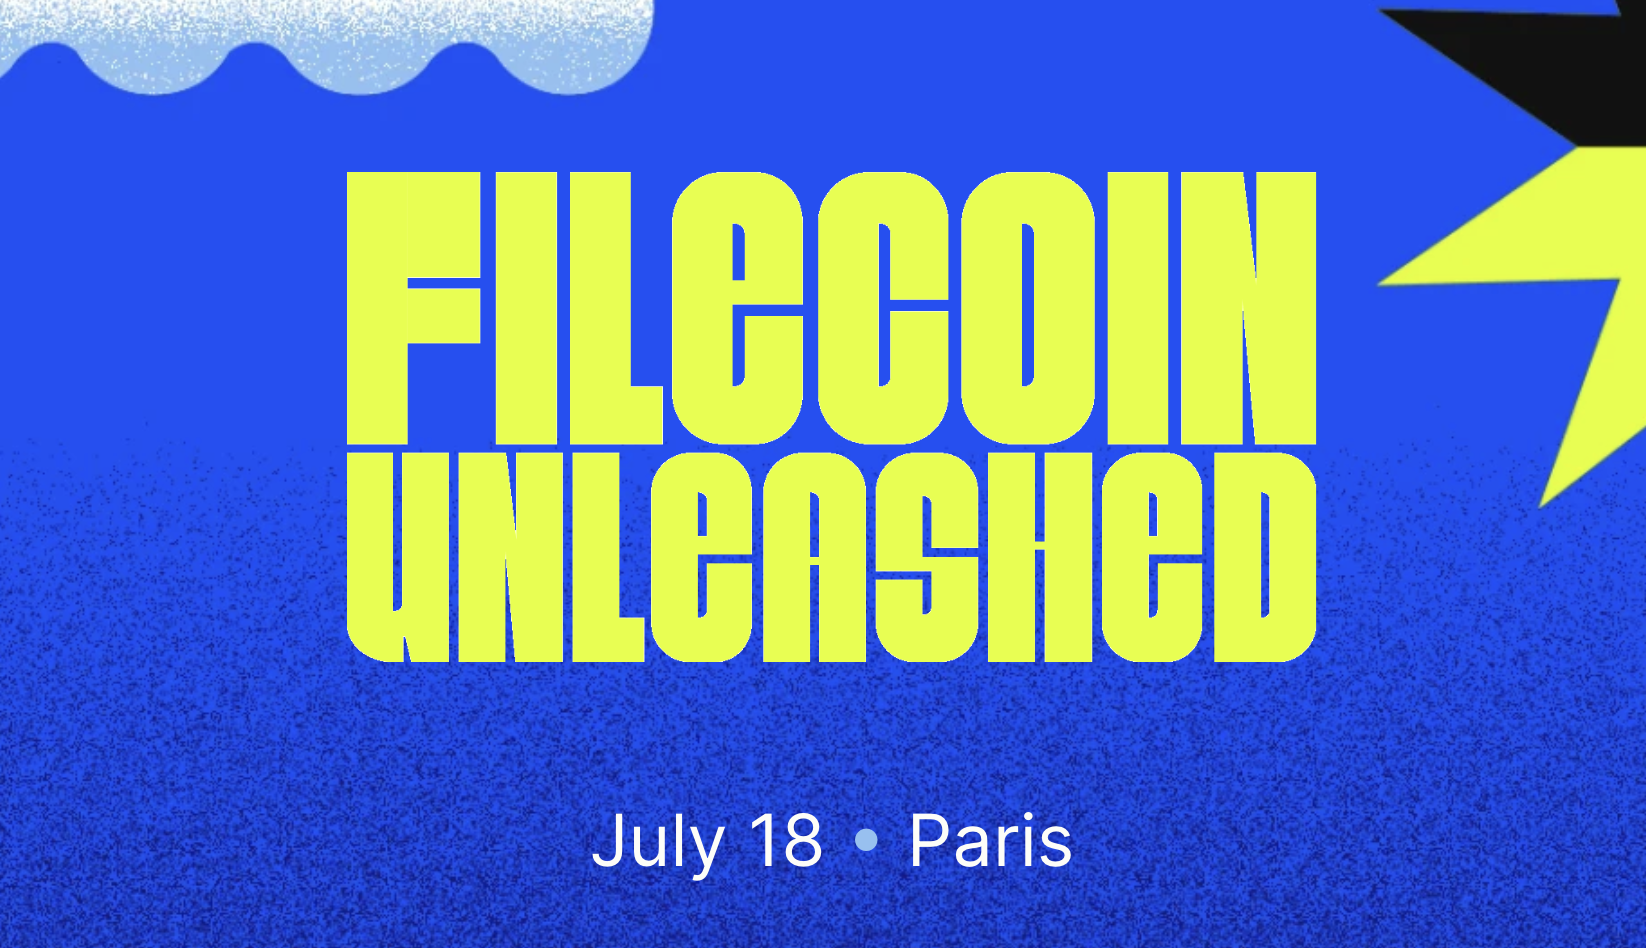 Filecoin Unleashed được diễn tại Paris vào ngày 18 tháng 7